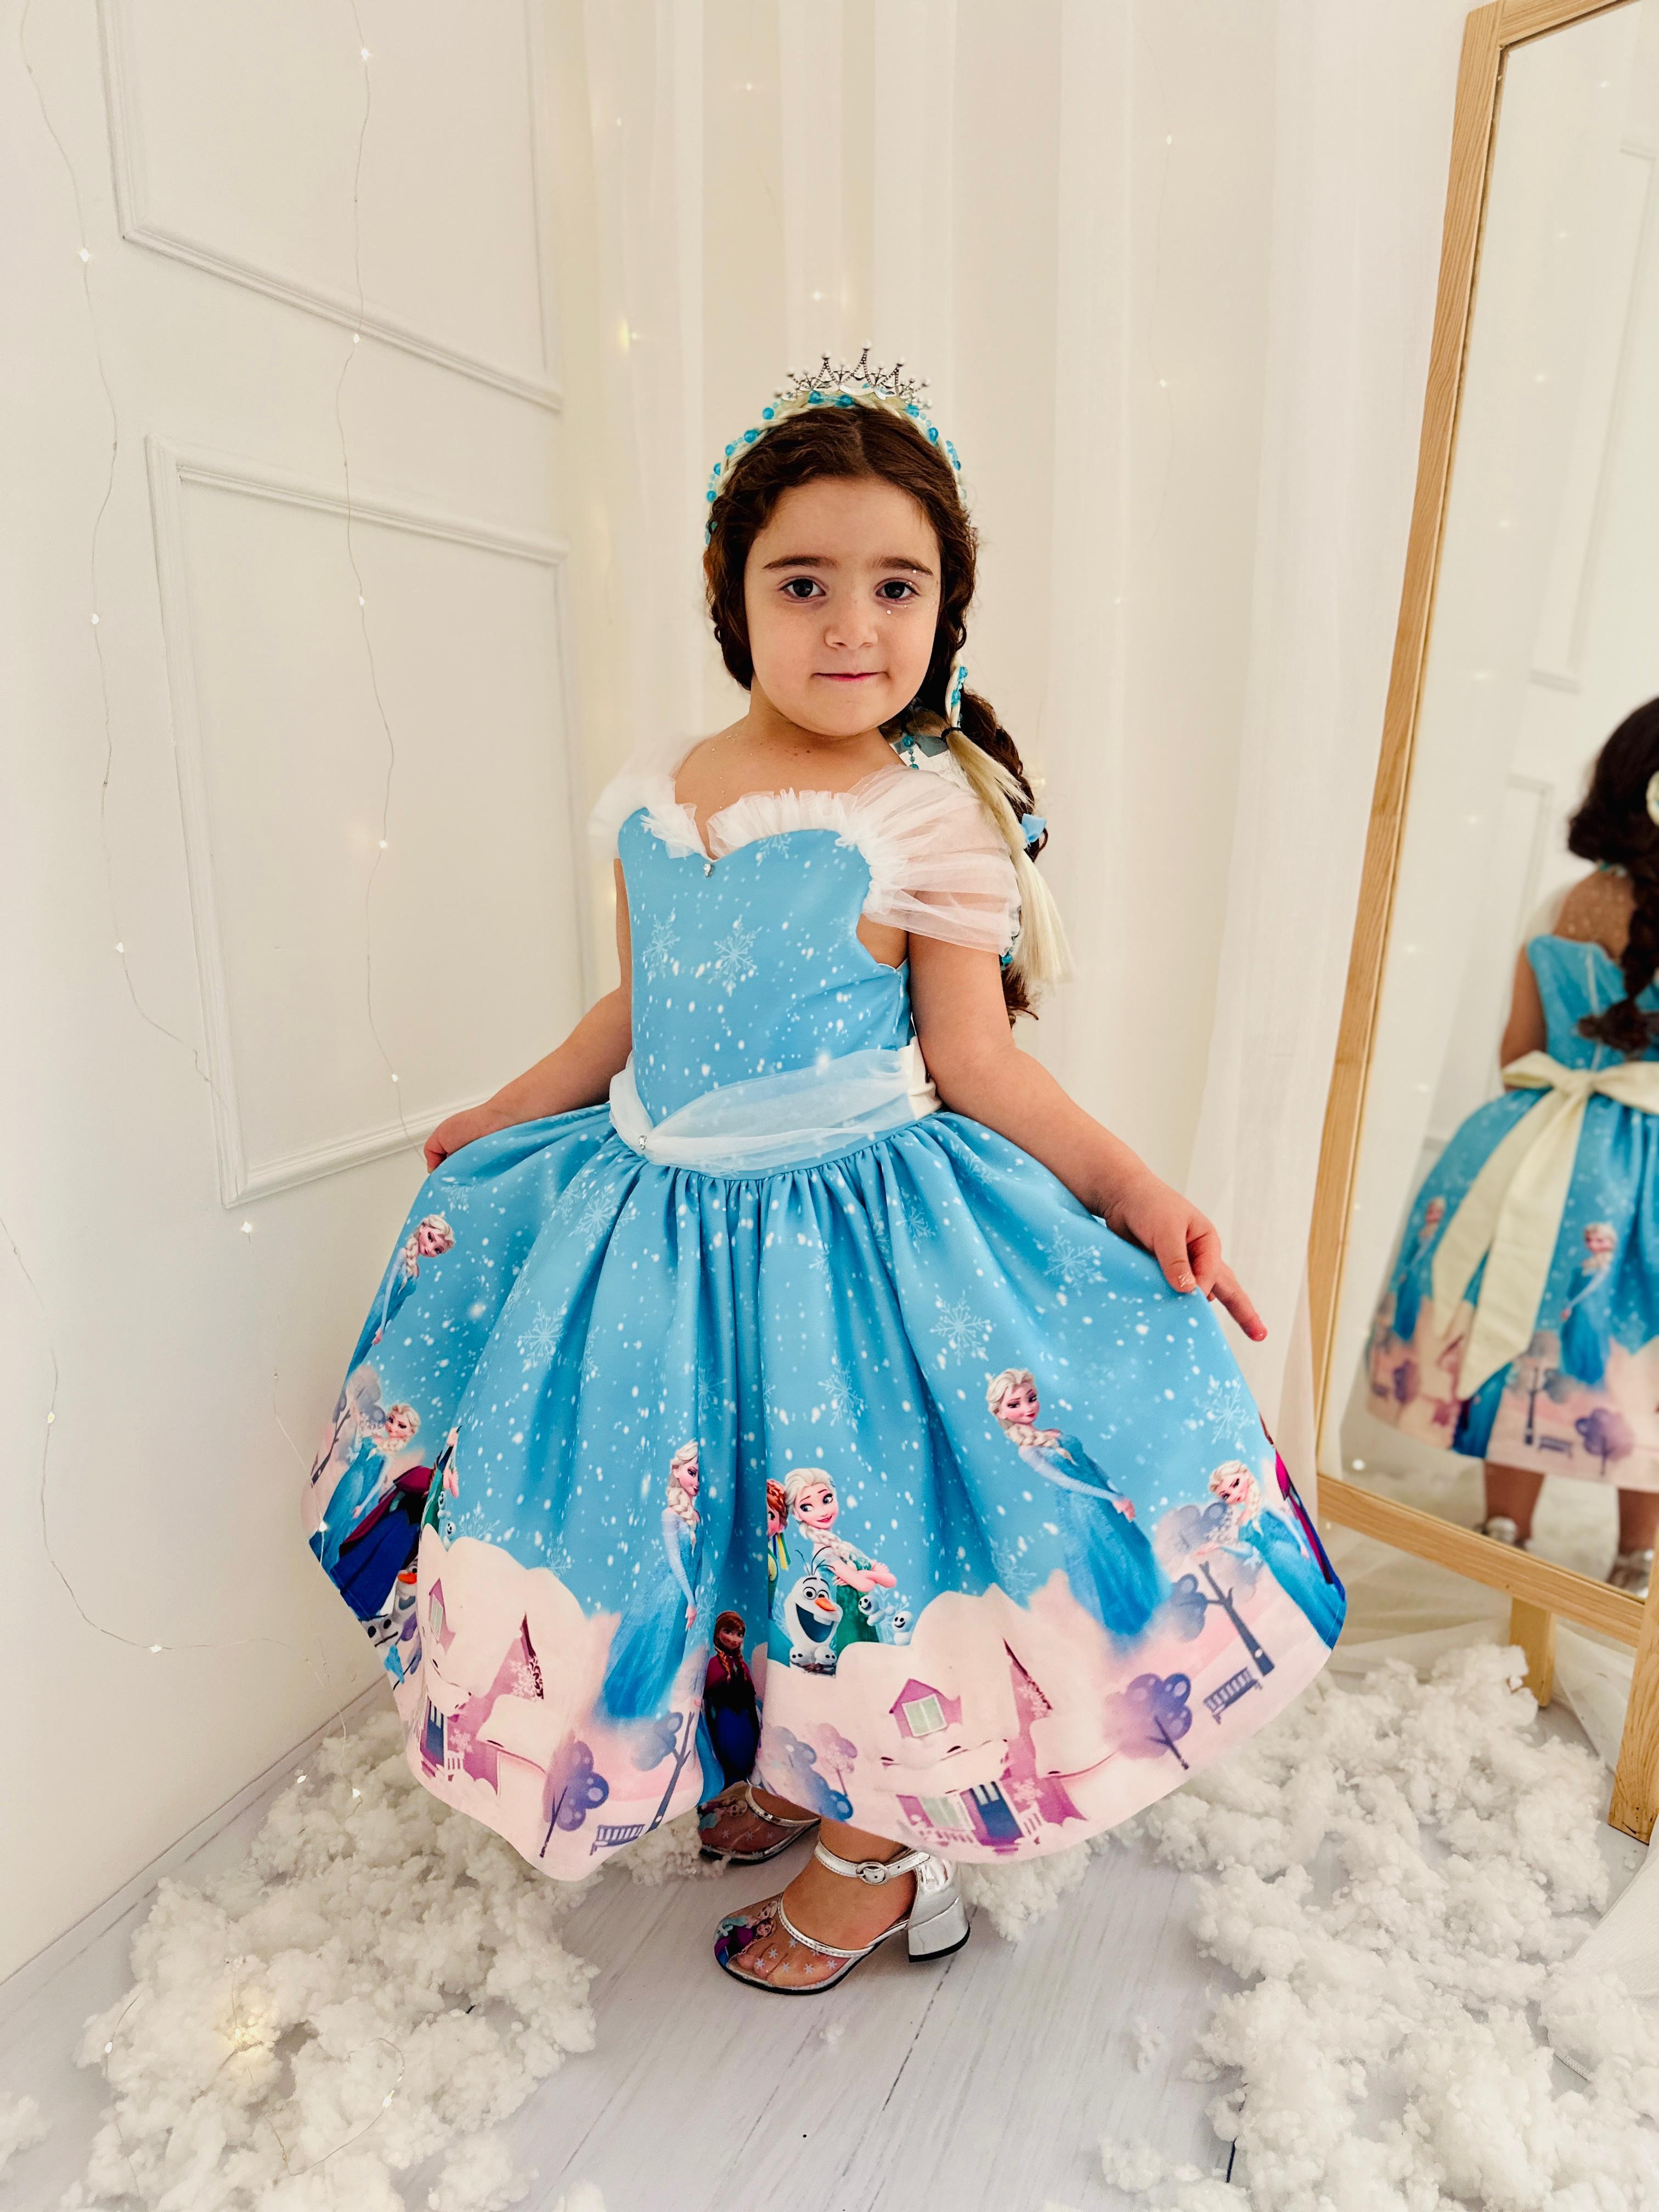 Firozen Mavi Vintage Kız Bebek Elbise,Doğum günü elbise,fotoğraf çekim elbise,0-10 Yaş Uygun